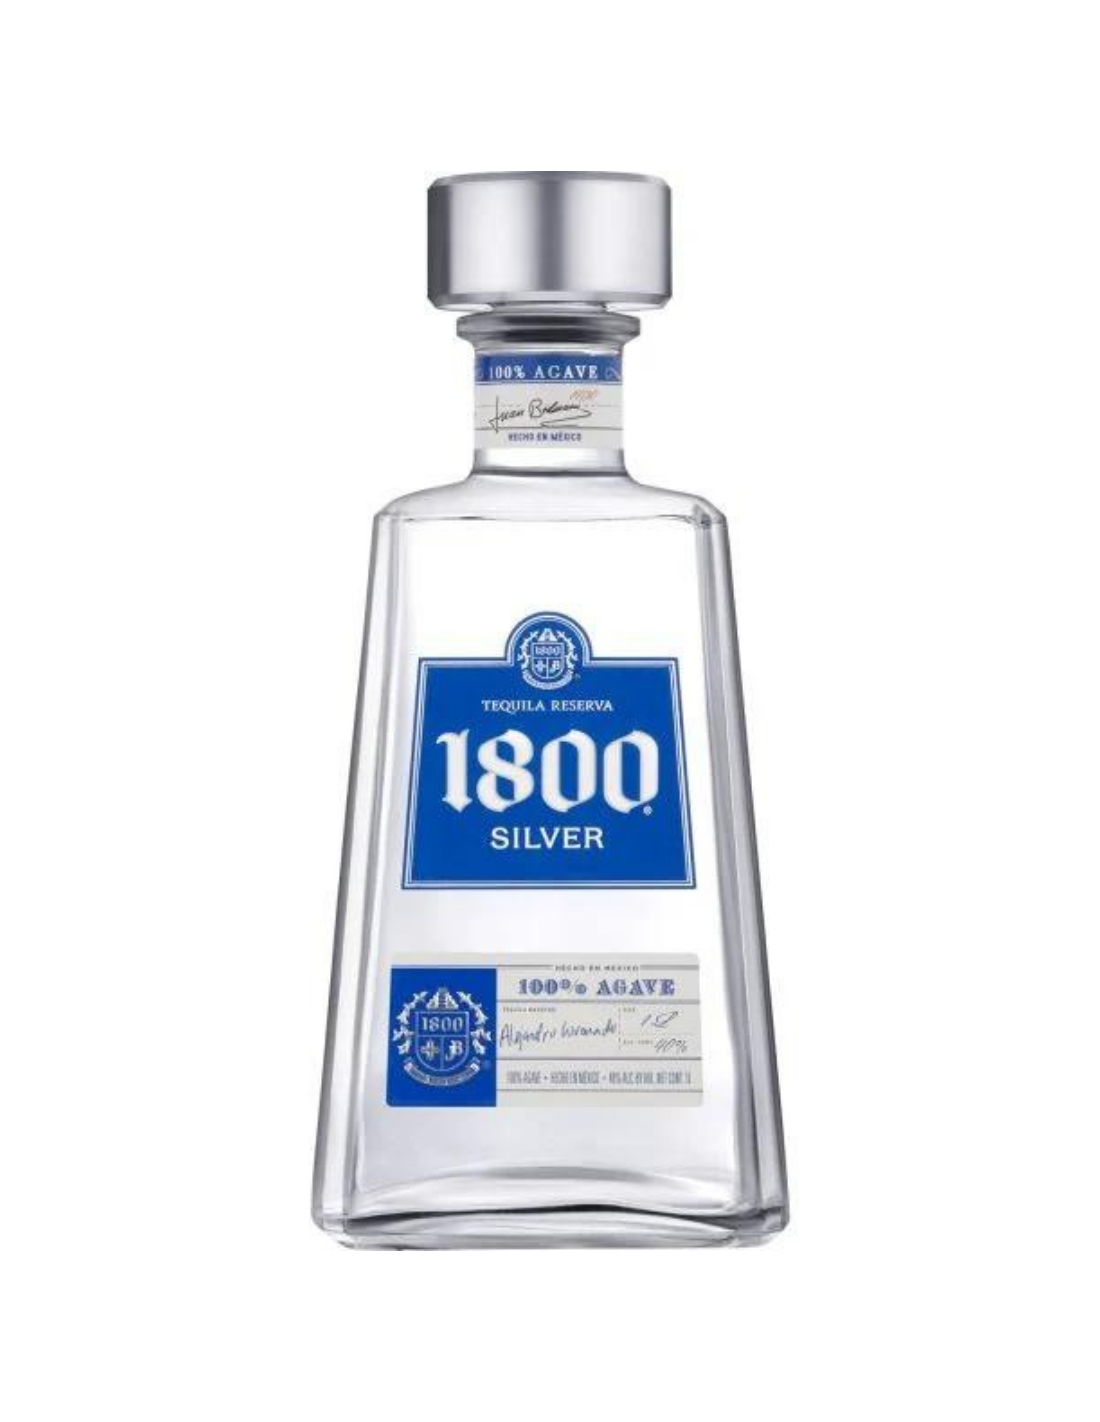 Tequila alba 1800 Silver, 0.7L, 38% alc., Mexic alcooldiscount.ro